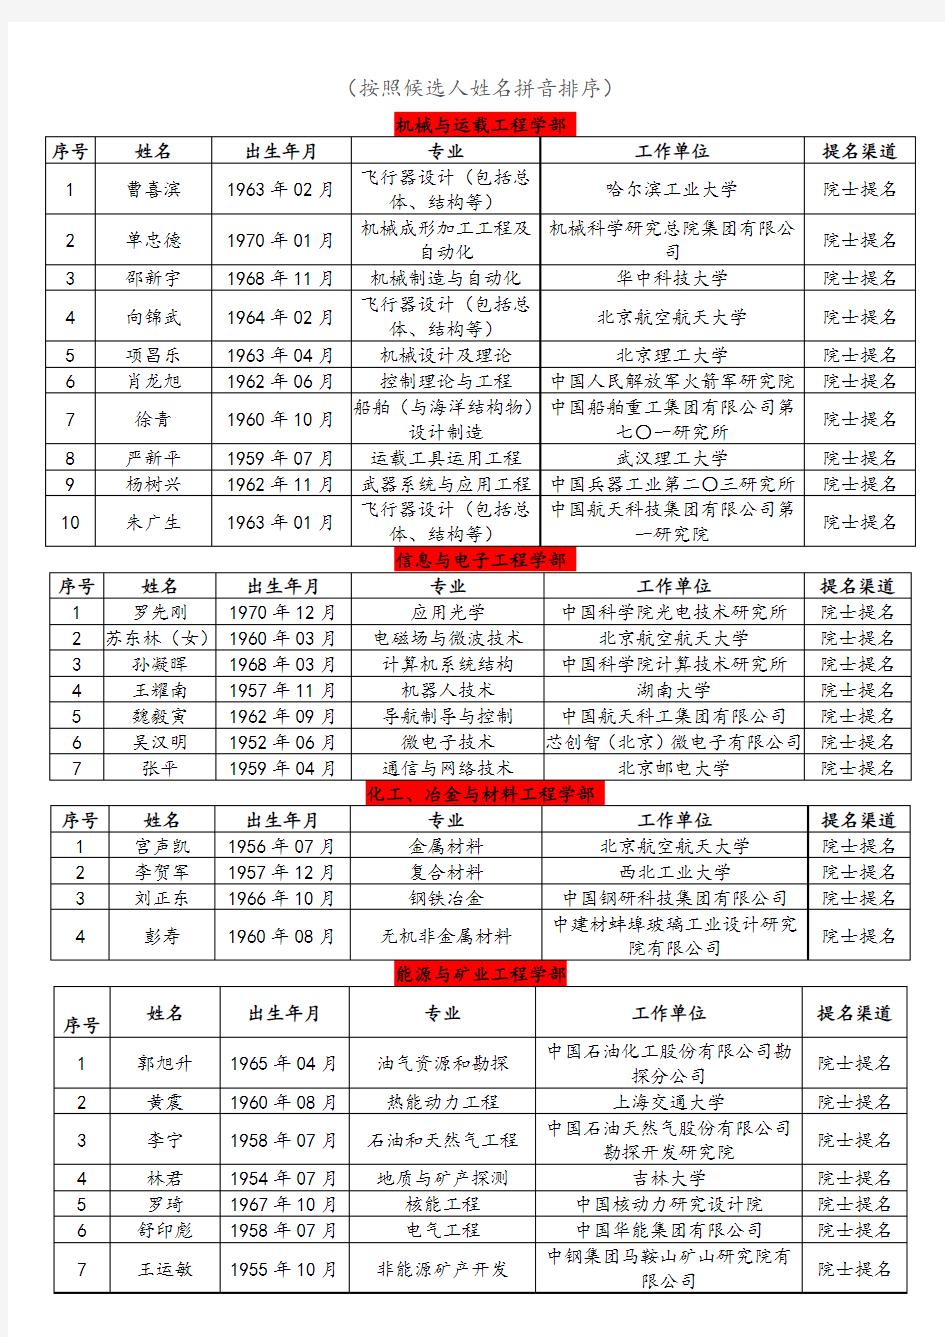 1_中国工程院2019年院士增选名单